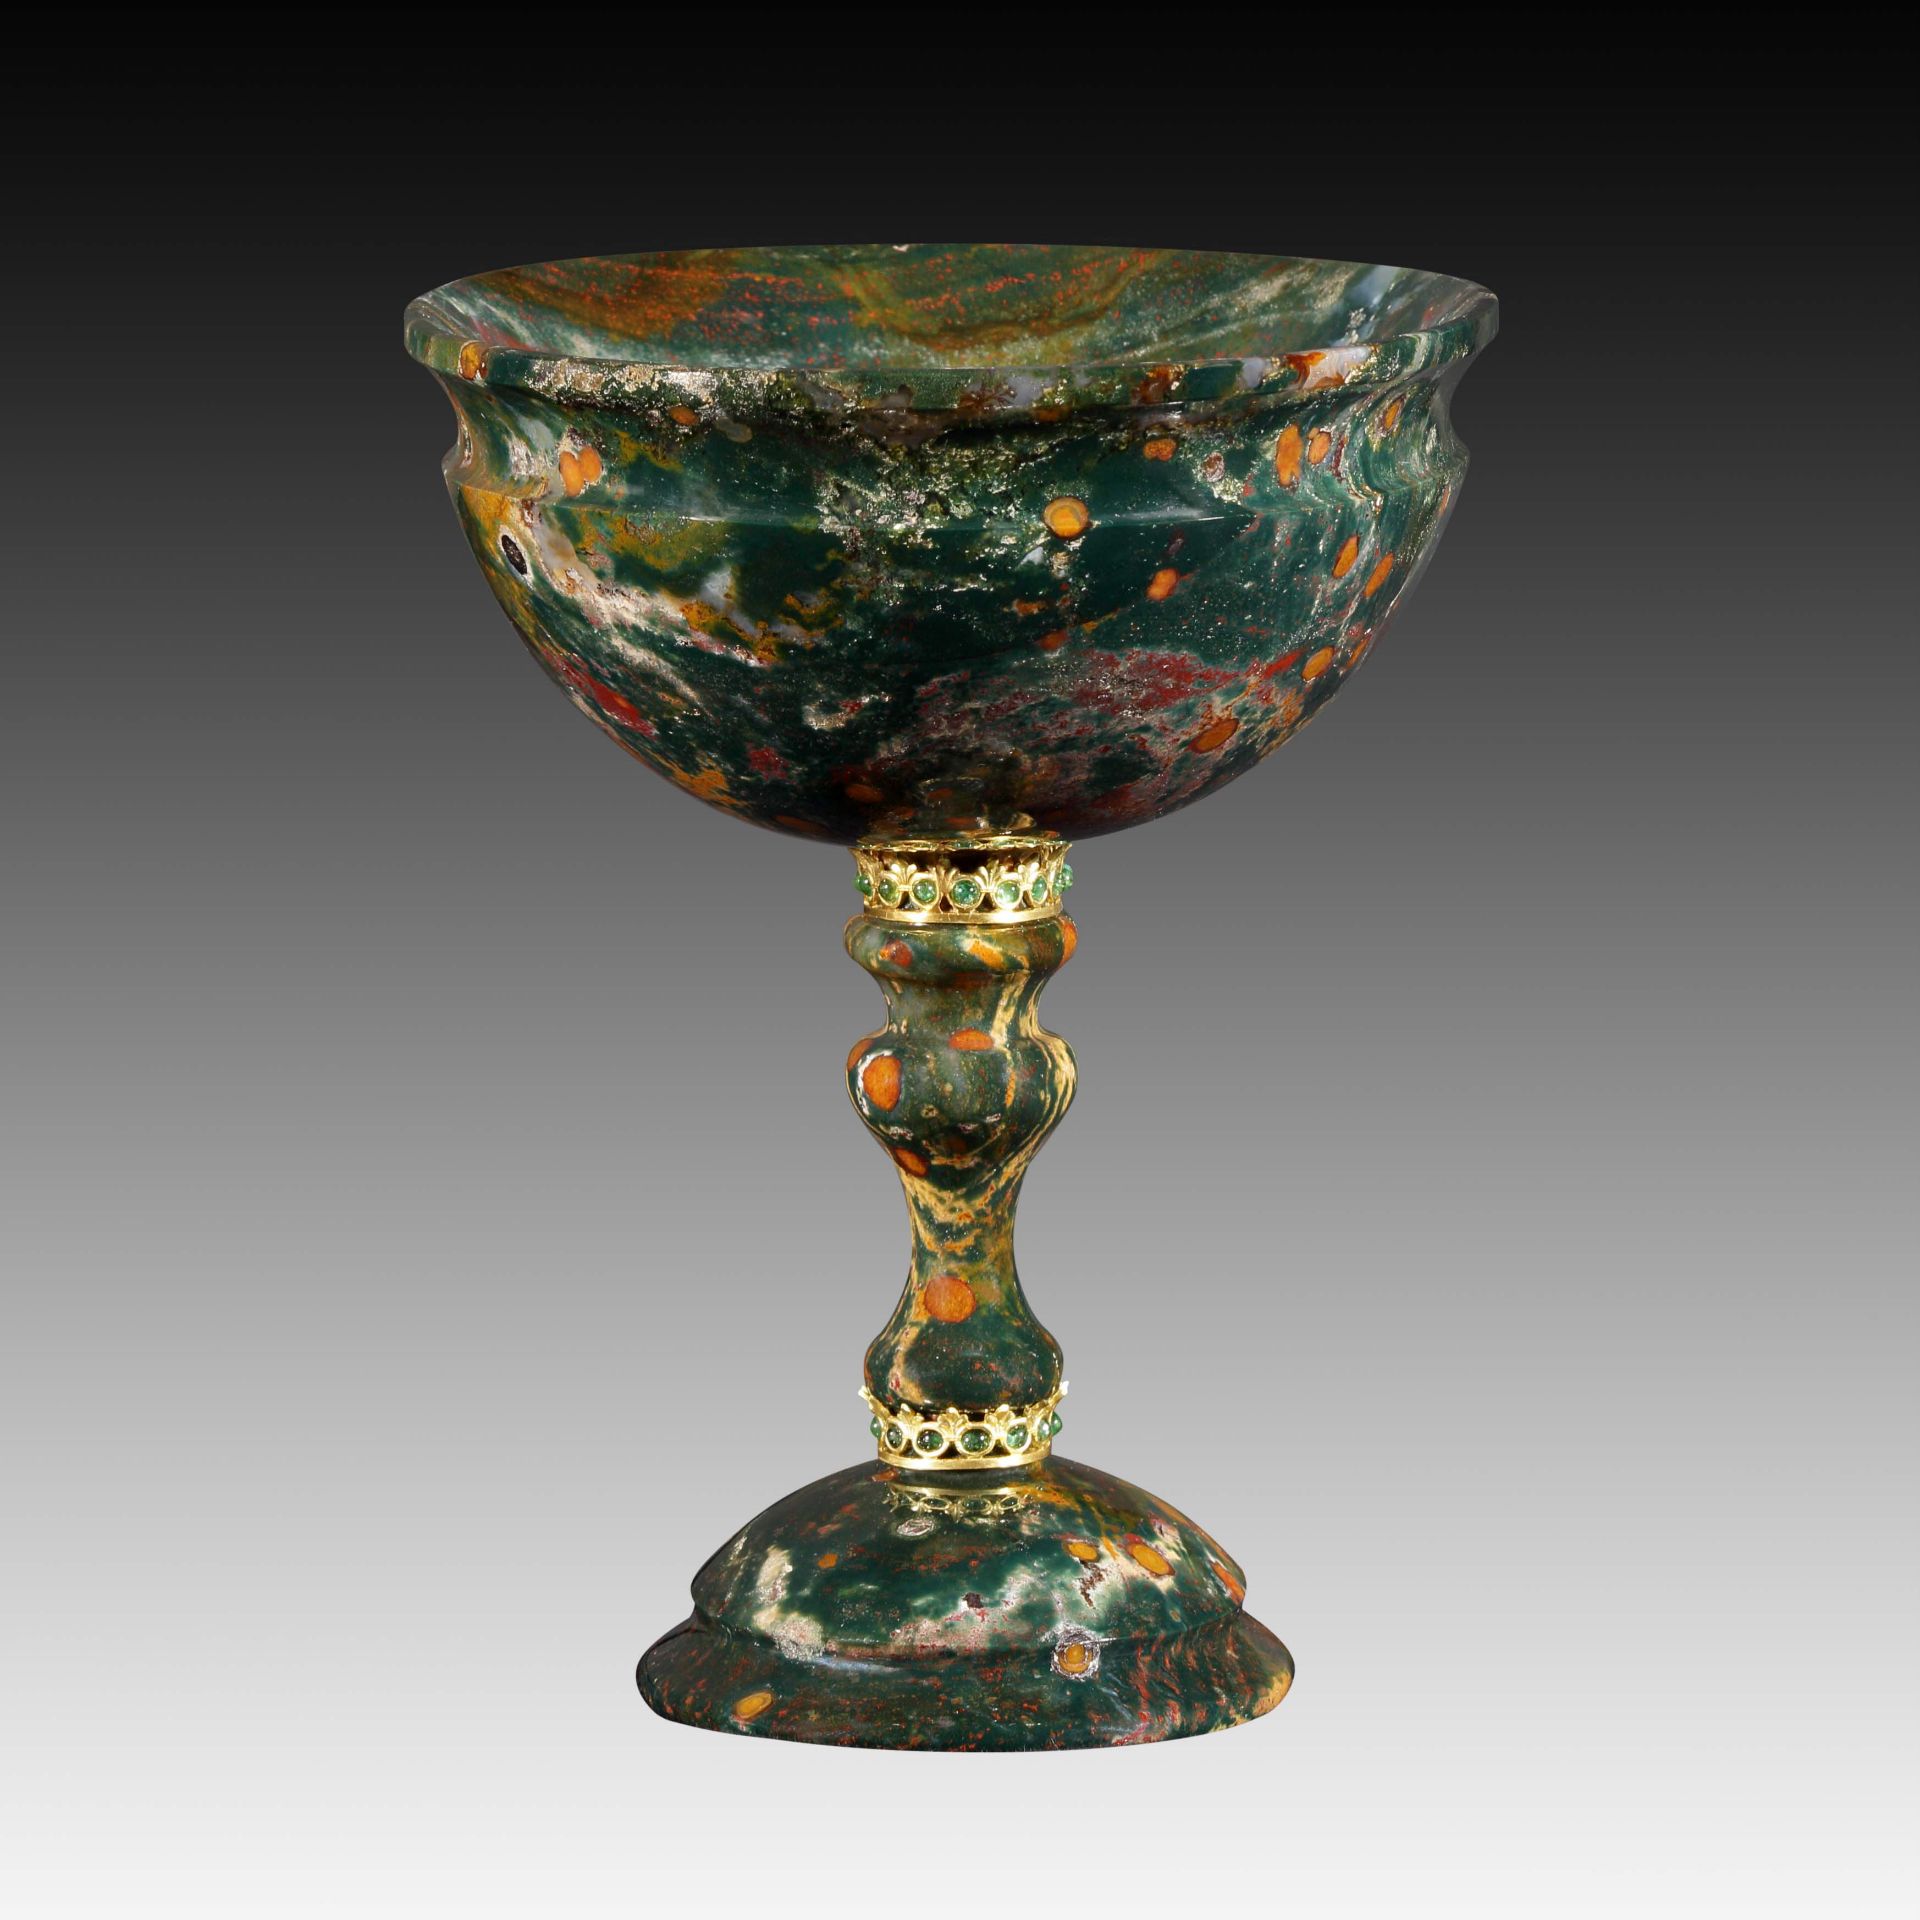 Ovaler Pokal aus grünem Jaspis - Kreation von Manfred Wild - Image 4 of 4